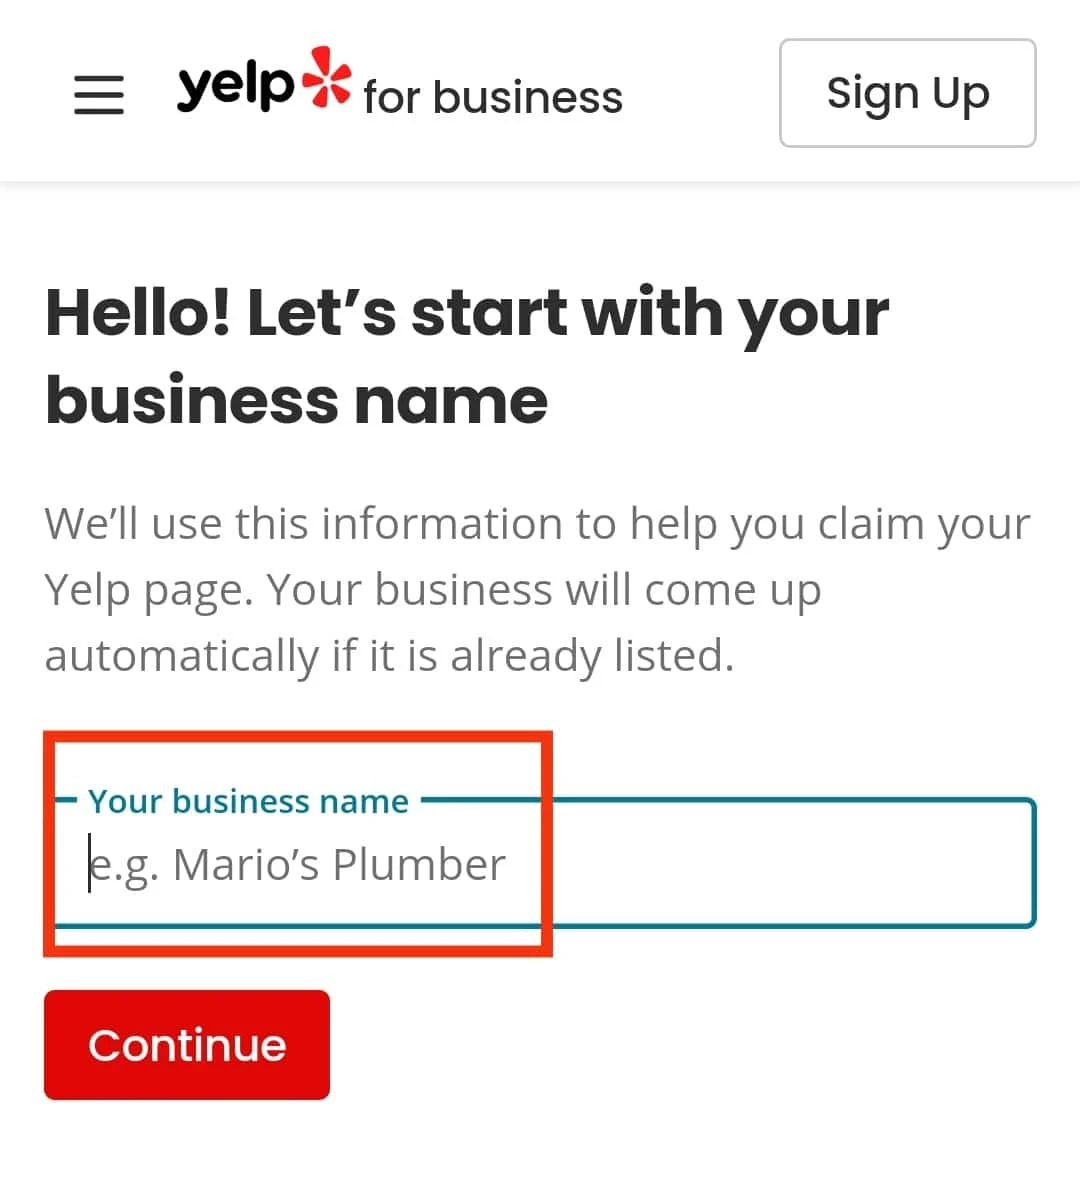 Digite o nome da sua empresa.